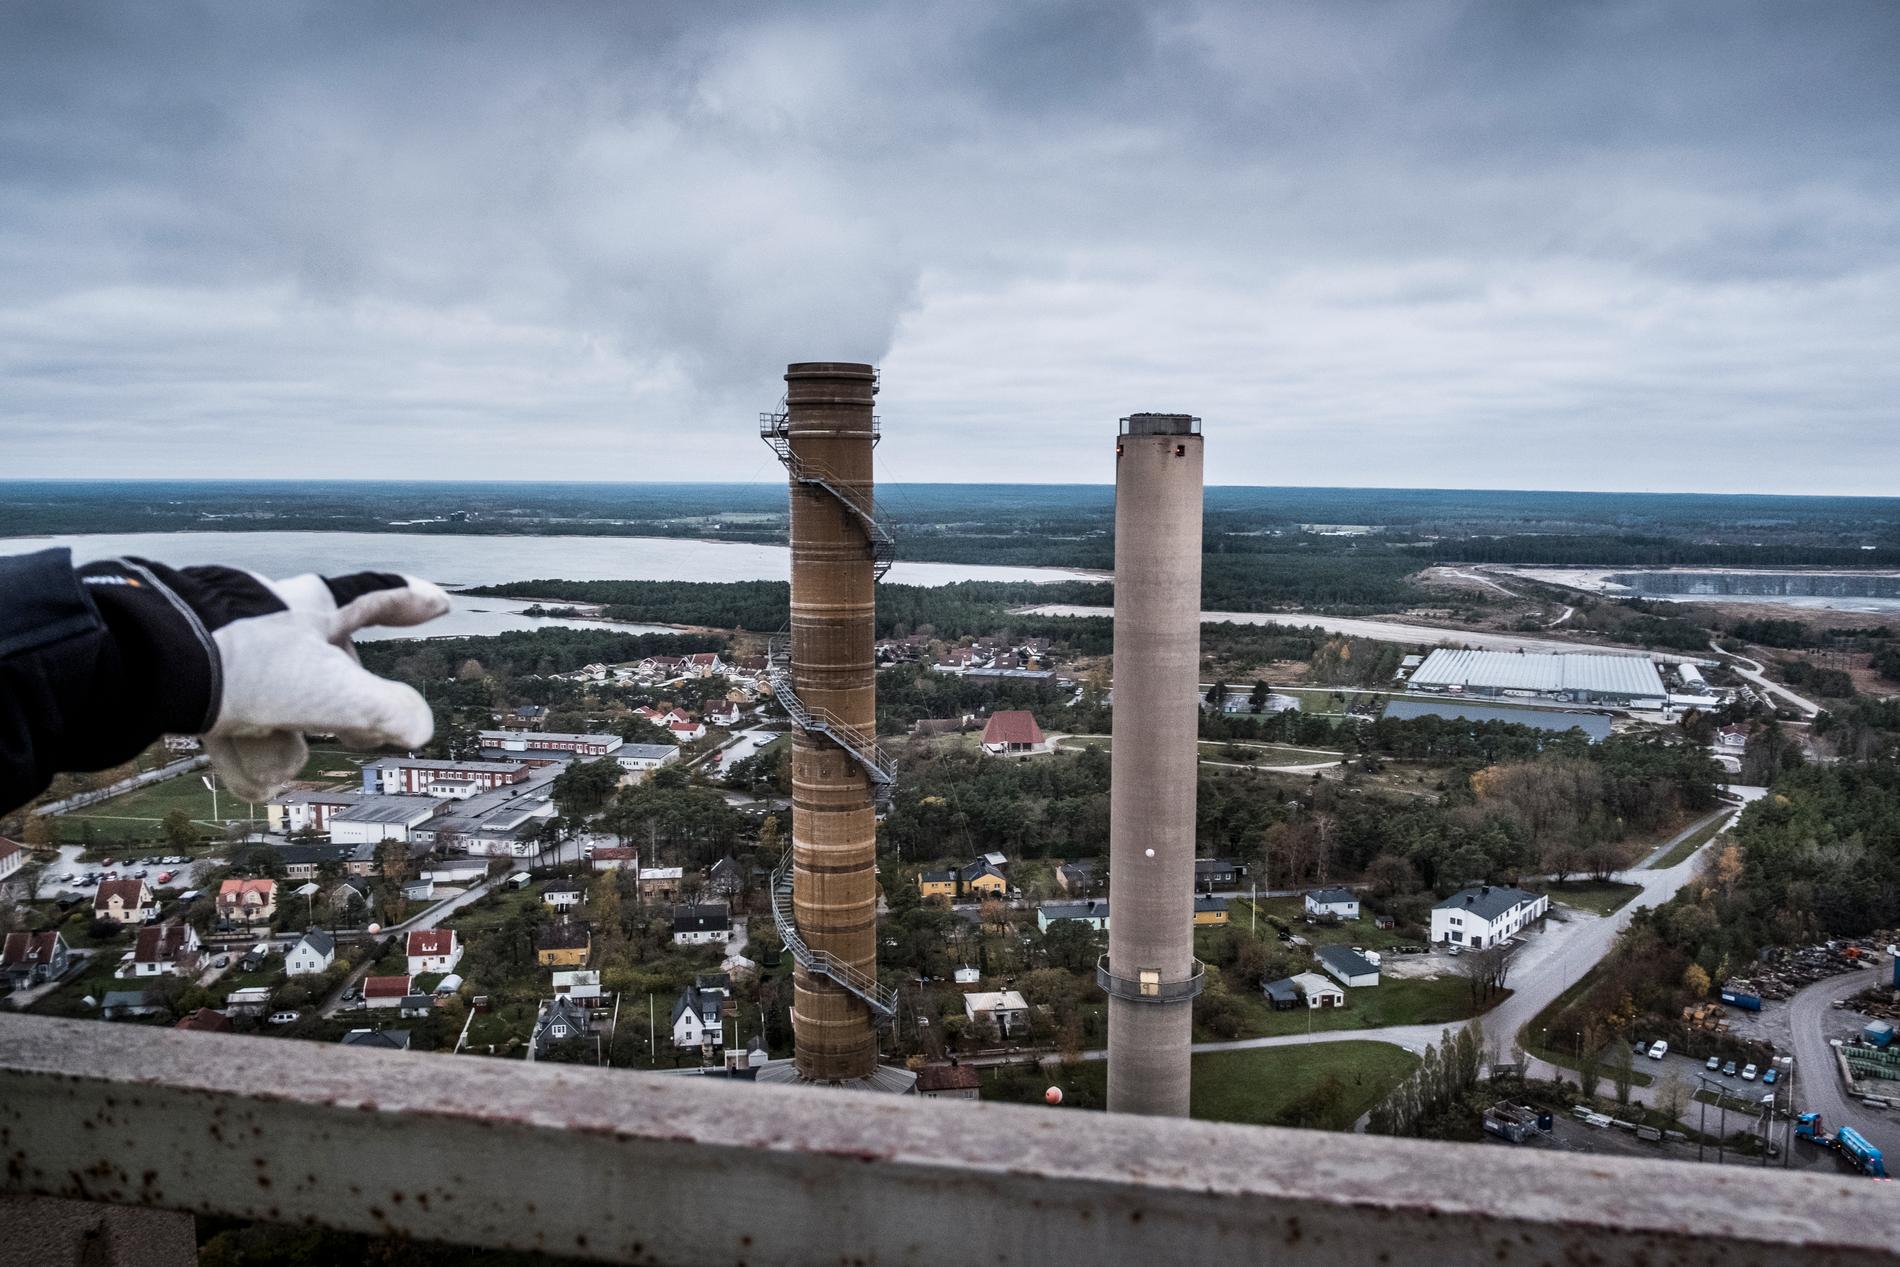 Cementas fabrik i Slite på Gotland är en av de anläggningar där det finns planer på koldioxidinfångning. Arkivbild.